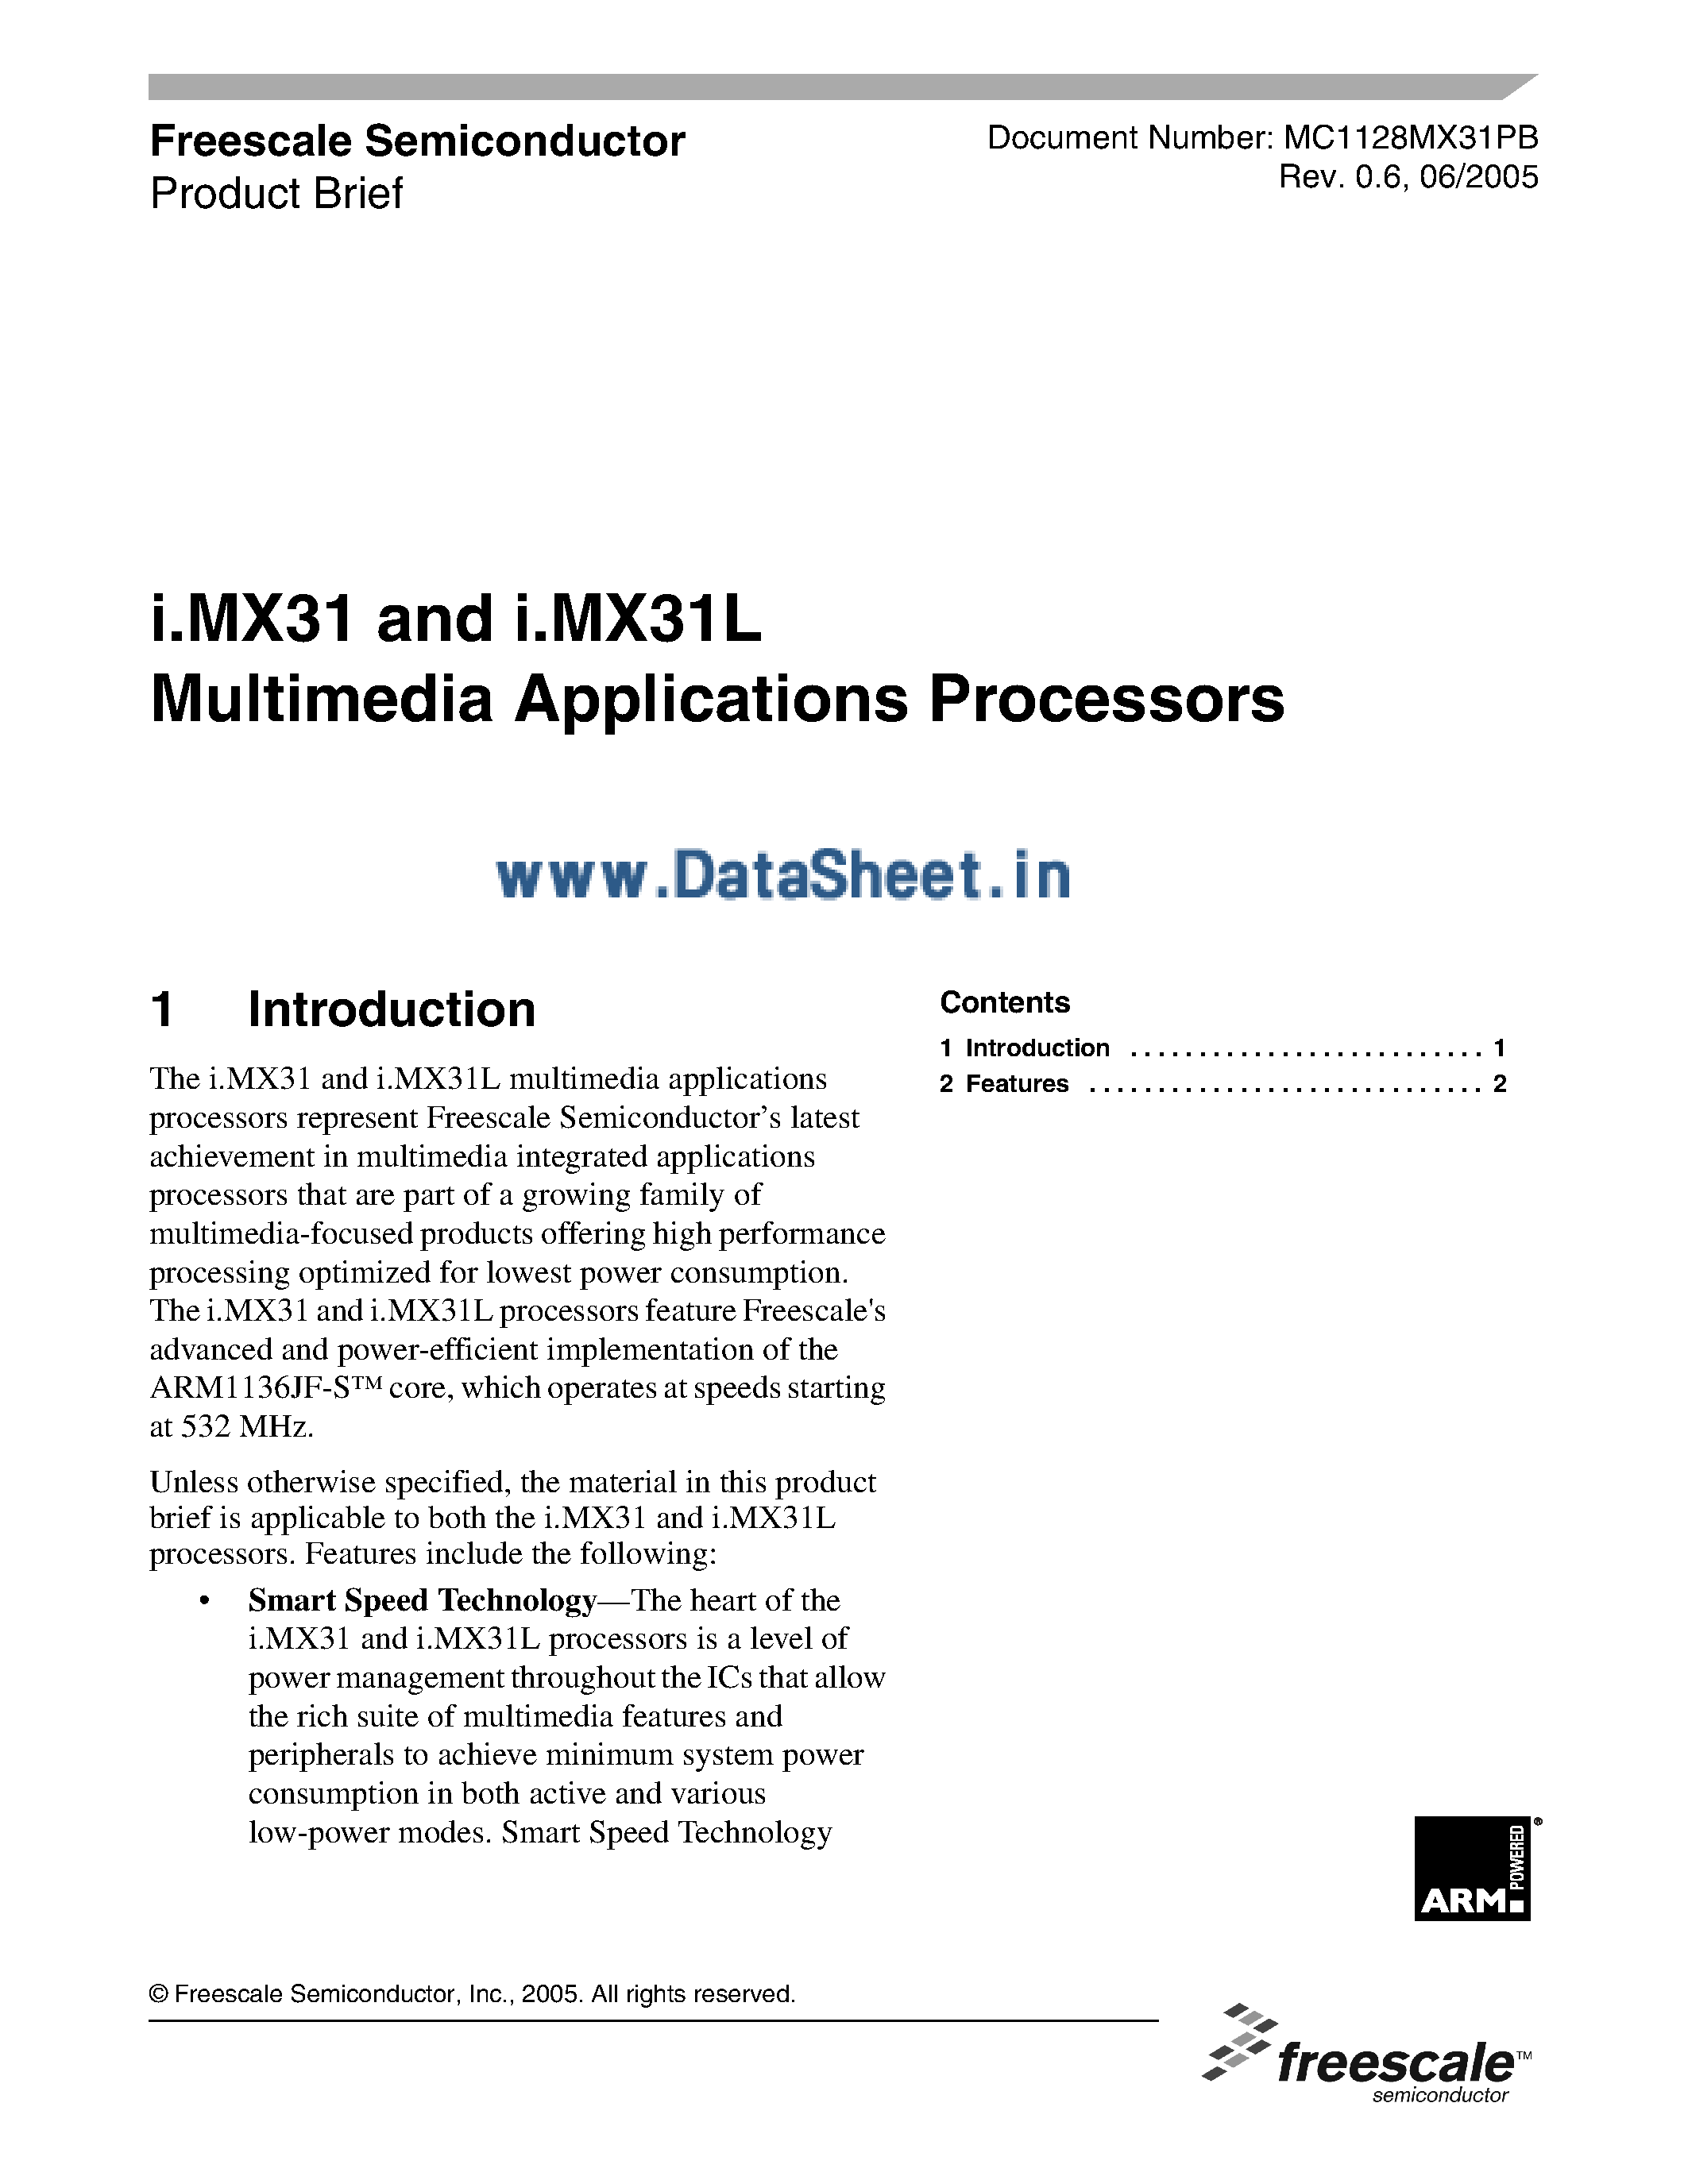 Даташит I.MX31 - Multimedia Applications Processors страница 1